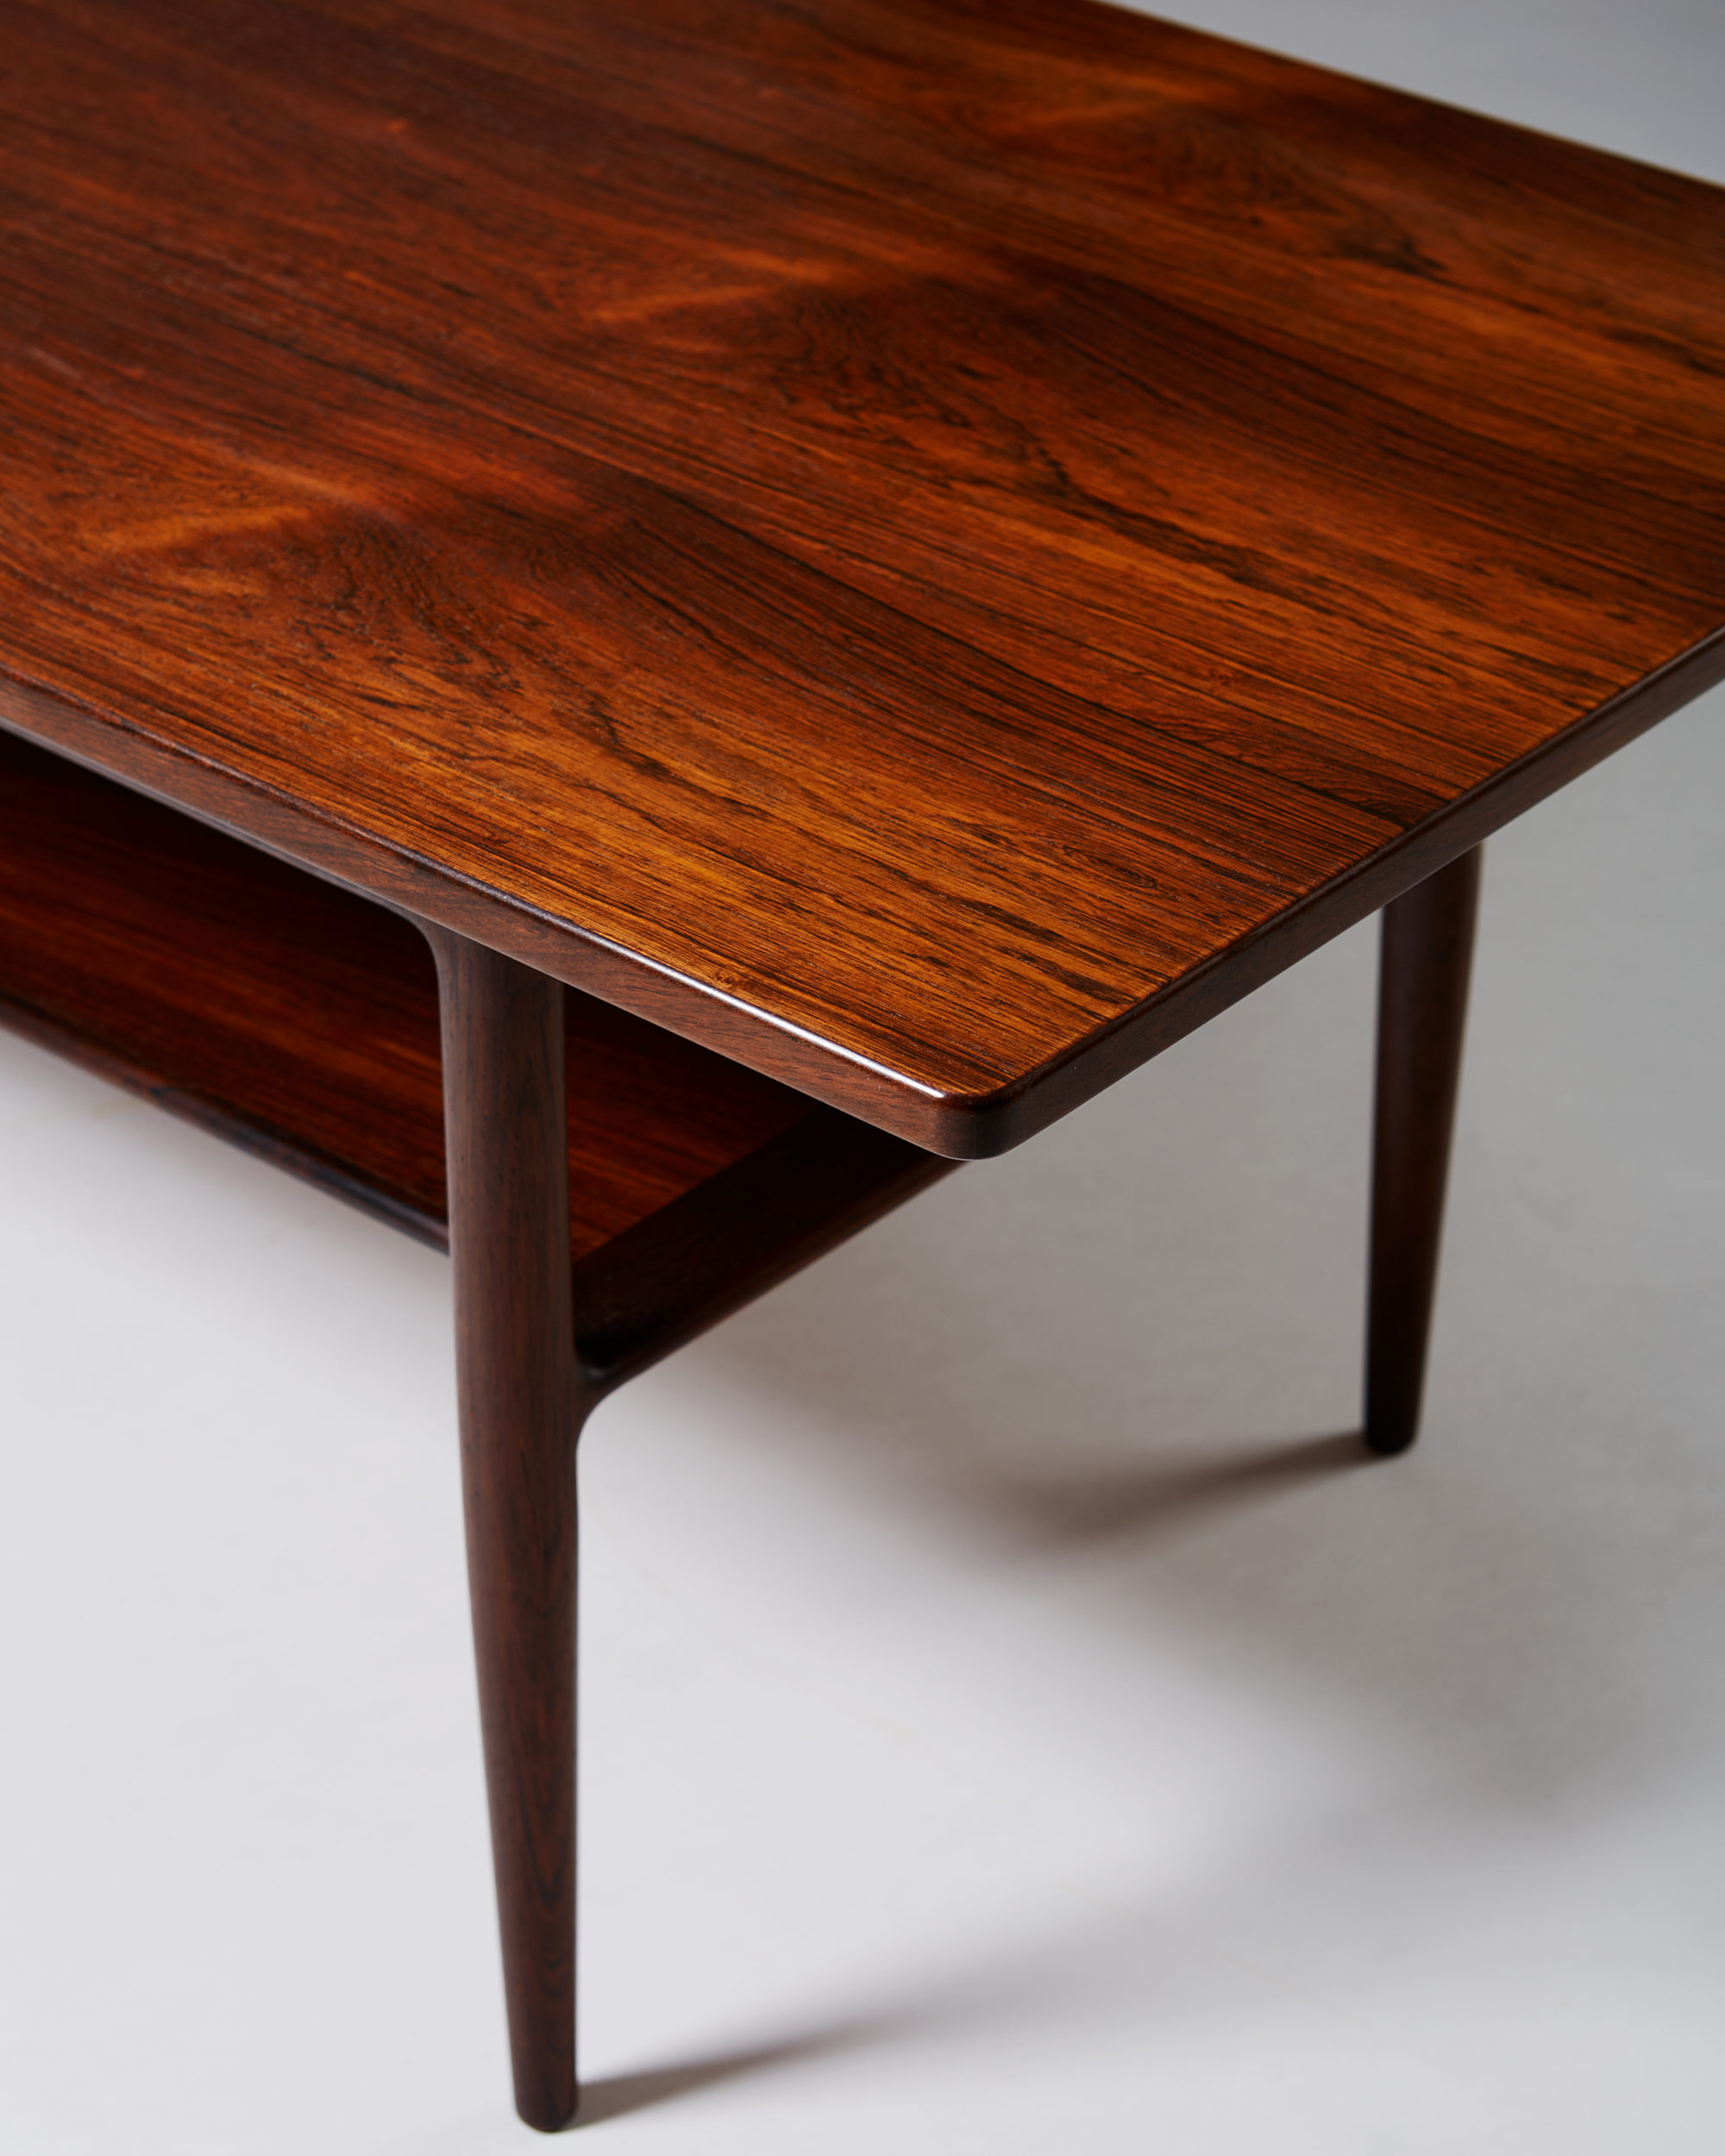 Occasional table designed by Ib Kofod-Larsen for Christensen & Larsen ...